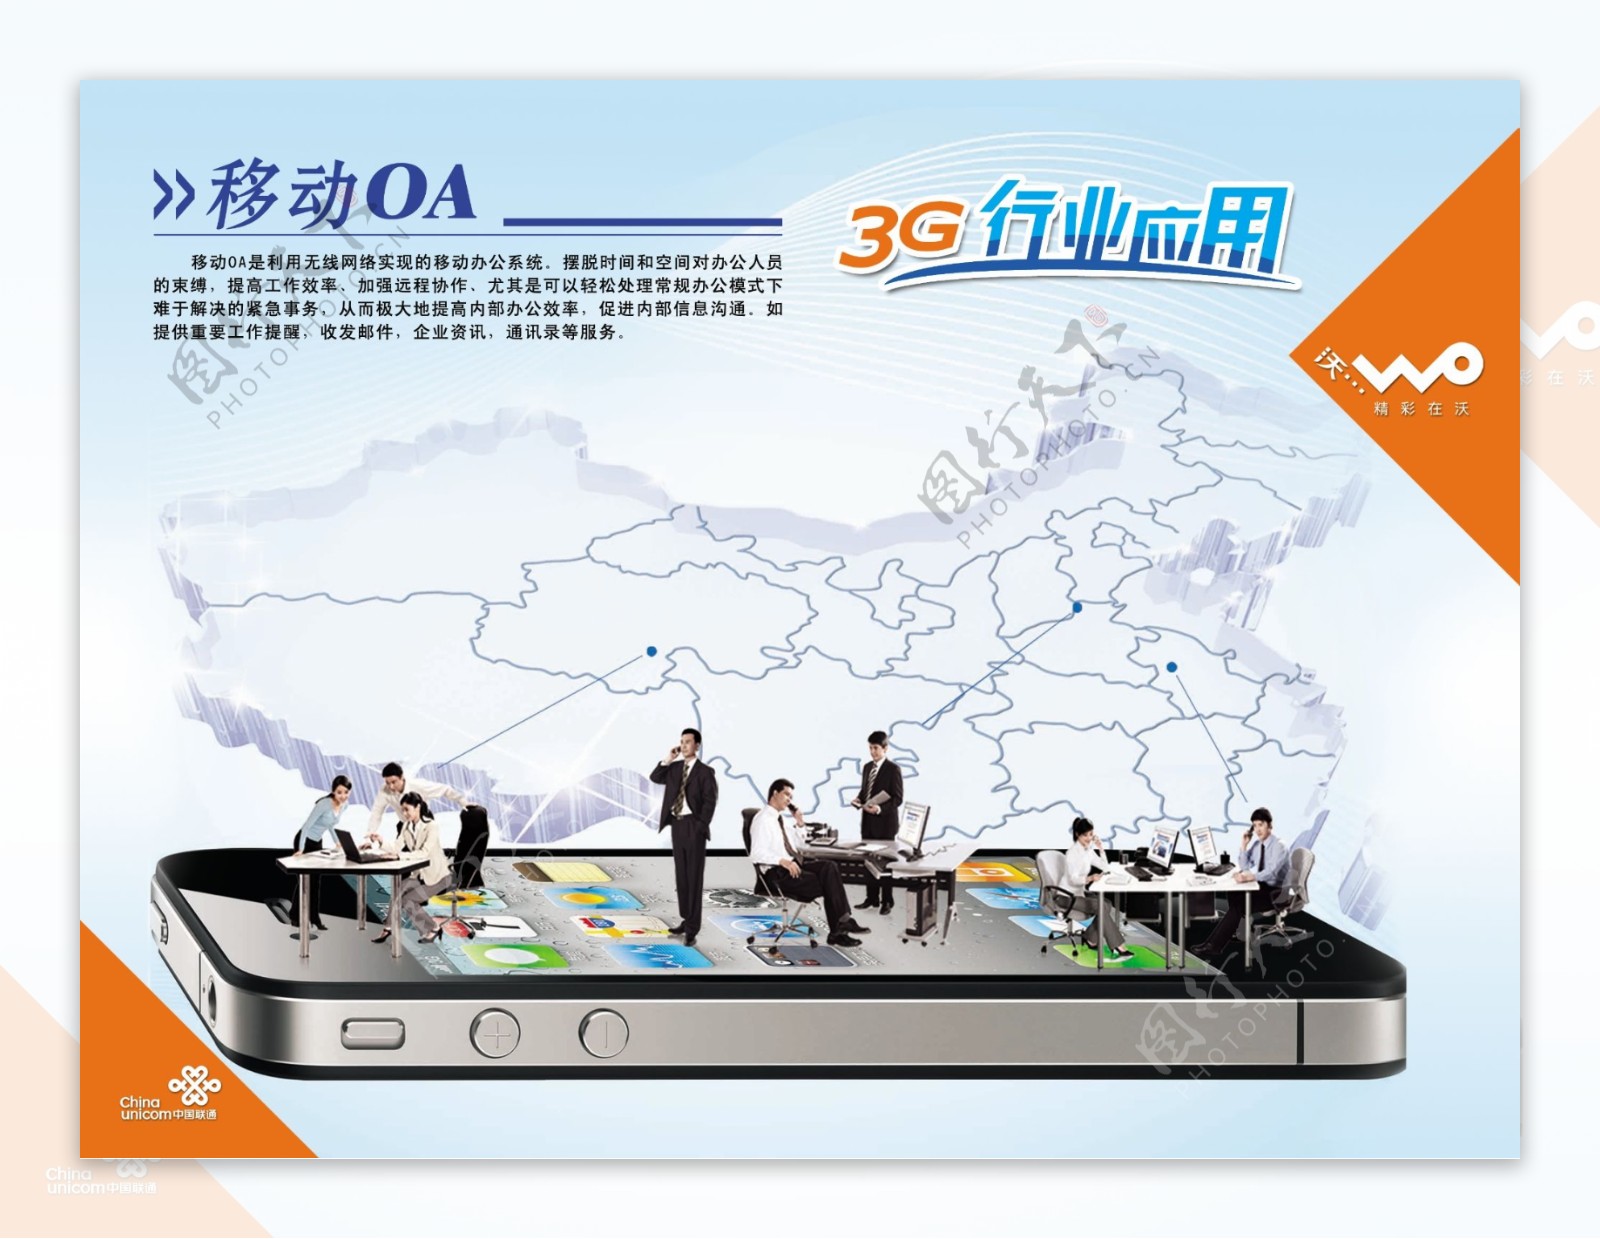 中国联通3G行业广告PSD素材